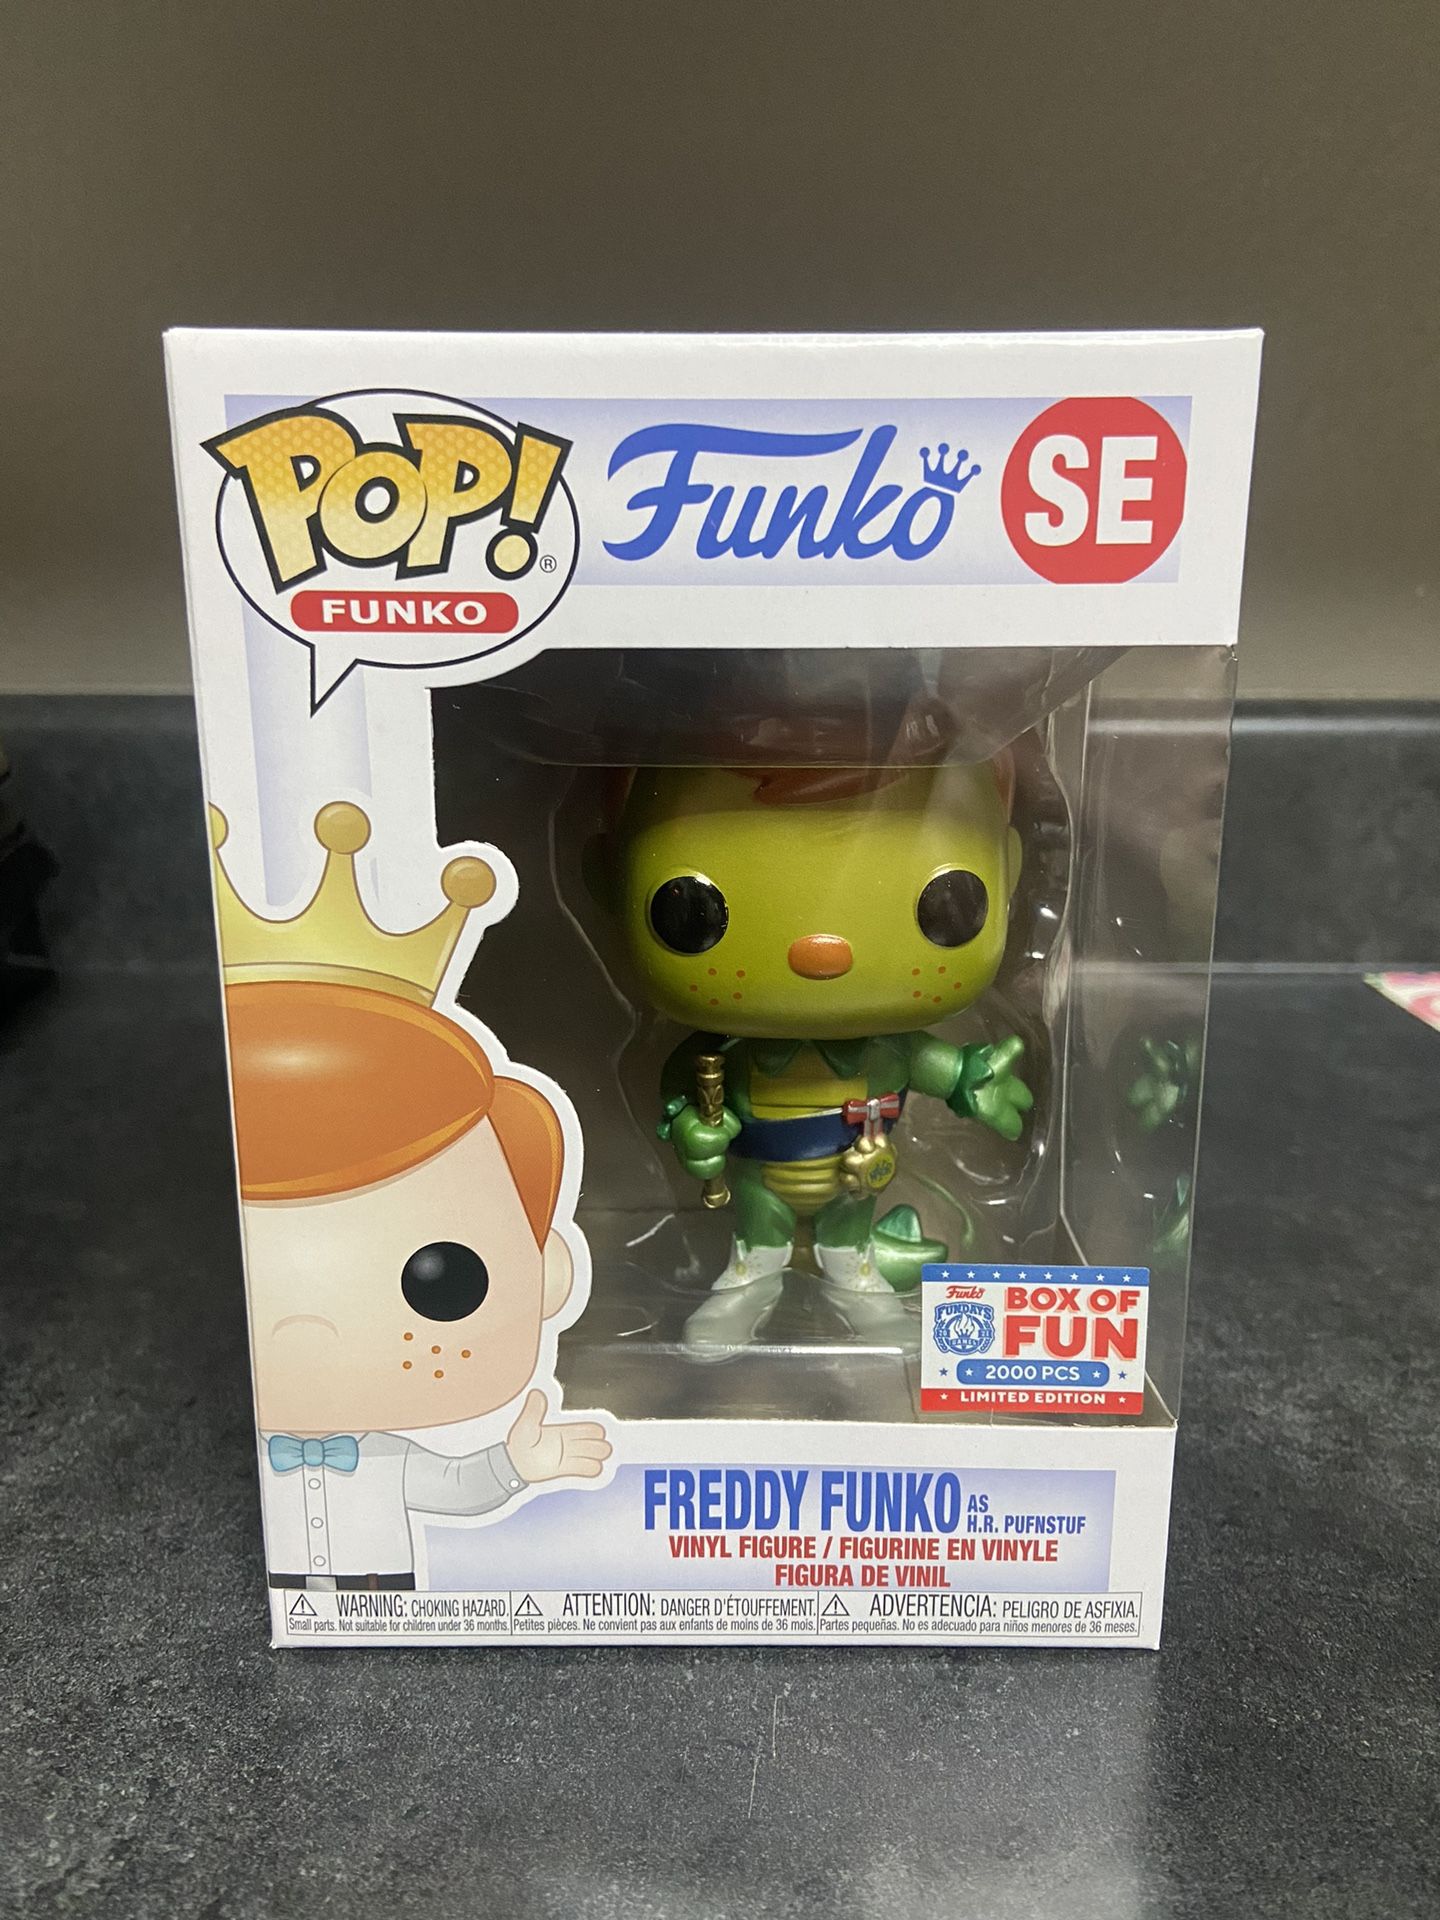 Freddy Funko As H.R. Pufnstuf 